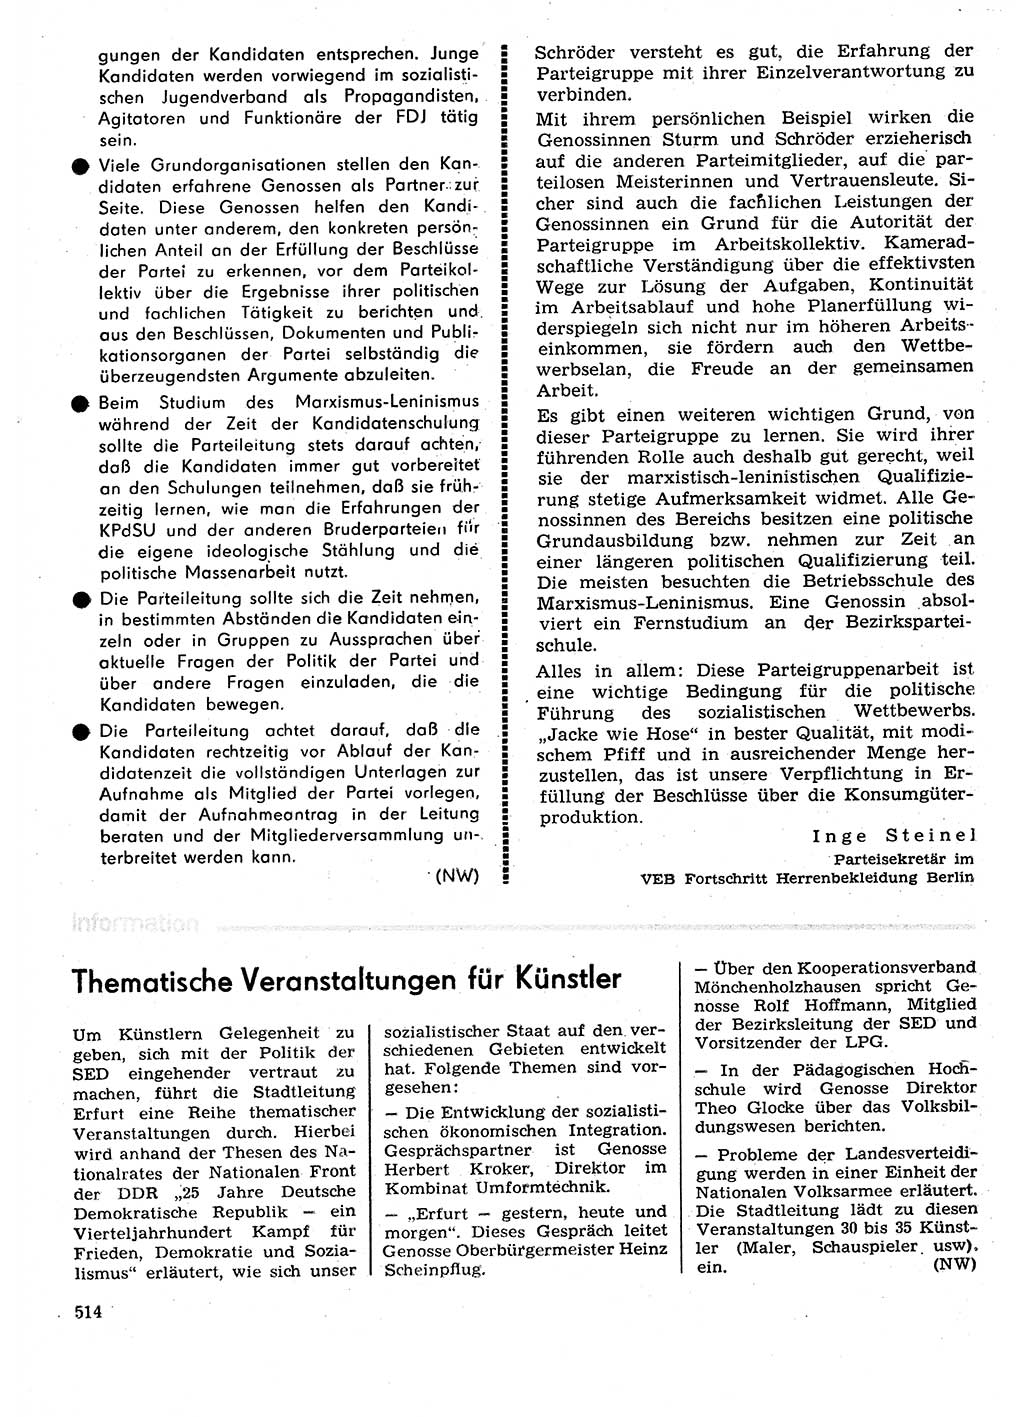 Neuer Weg (NW), Organ des Zentralkomitees (ZK) der SED (Sozialistische Einheitspartei Deutschlands) für Fragen des Parteilebens, 29. Jahrgang [Deutsche Demokratische Republik (DDR)] 1974, Seite 514 (NW ZK SED DDR 1974, S. 514)